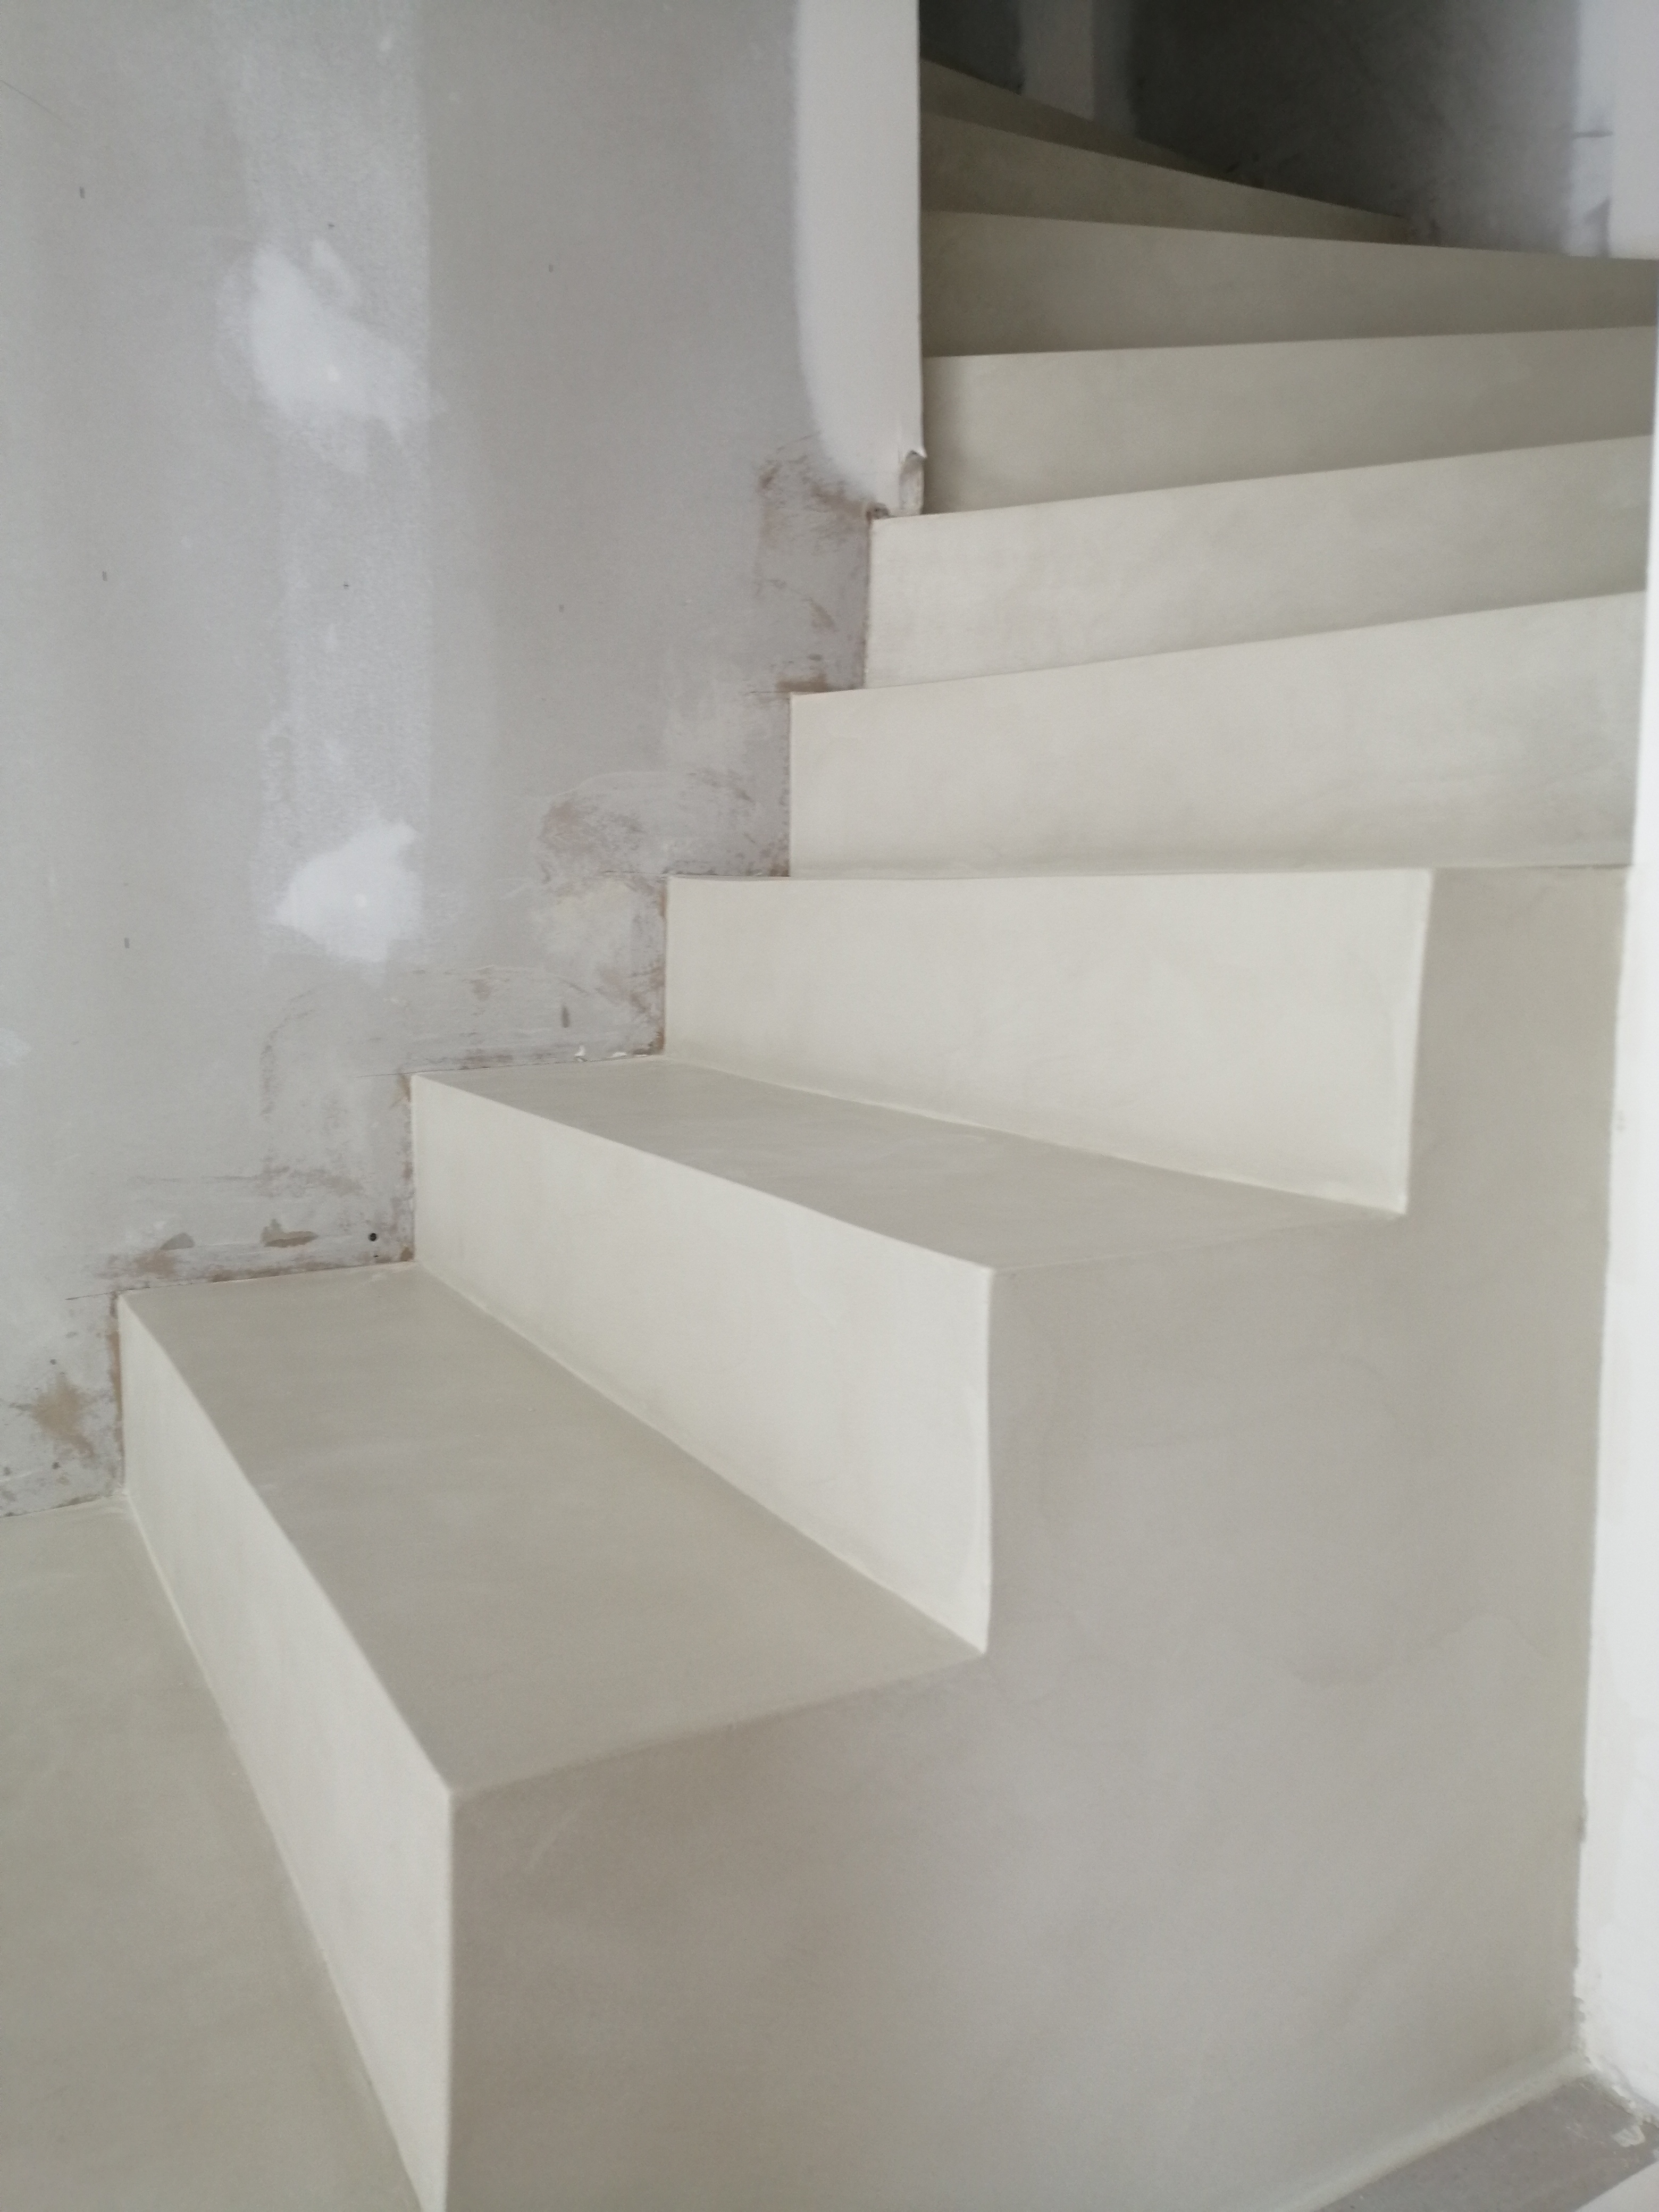 bel marches d'un escalier à paillasse en béton ciré vernis soyeux couleur karonga à Clapier près de Montpellier dans l herault pour un architecte